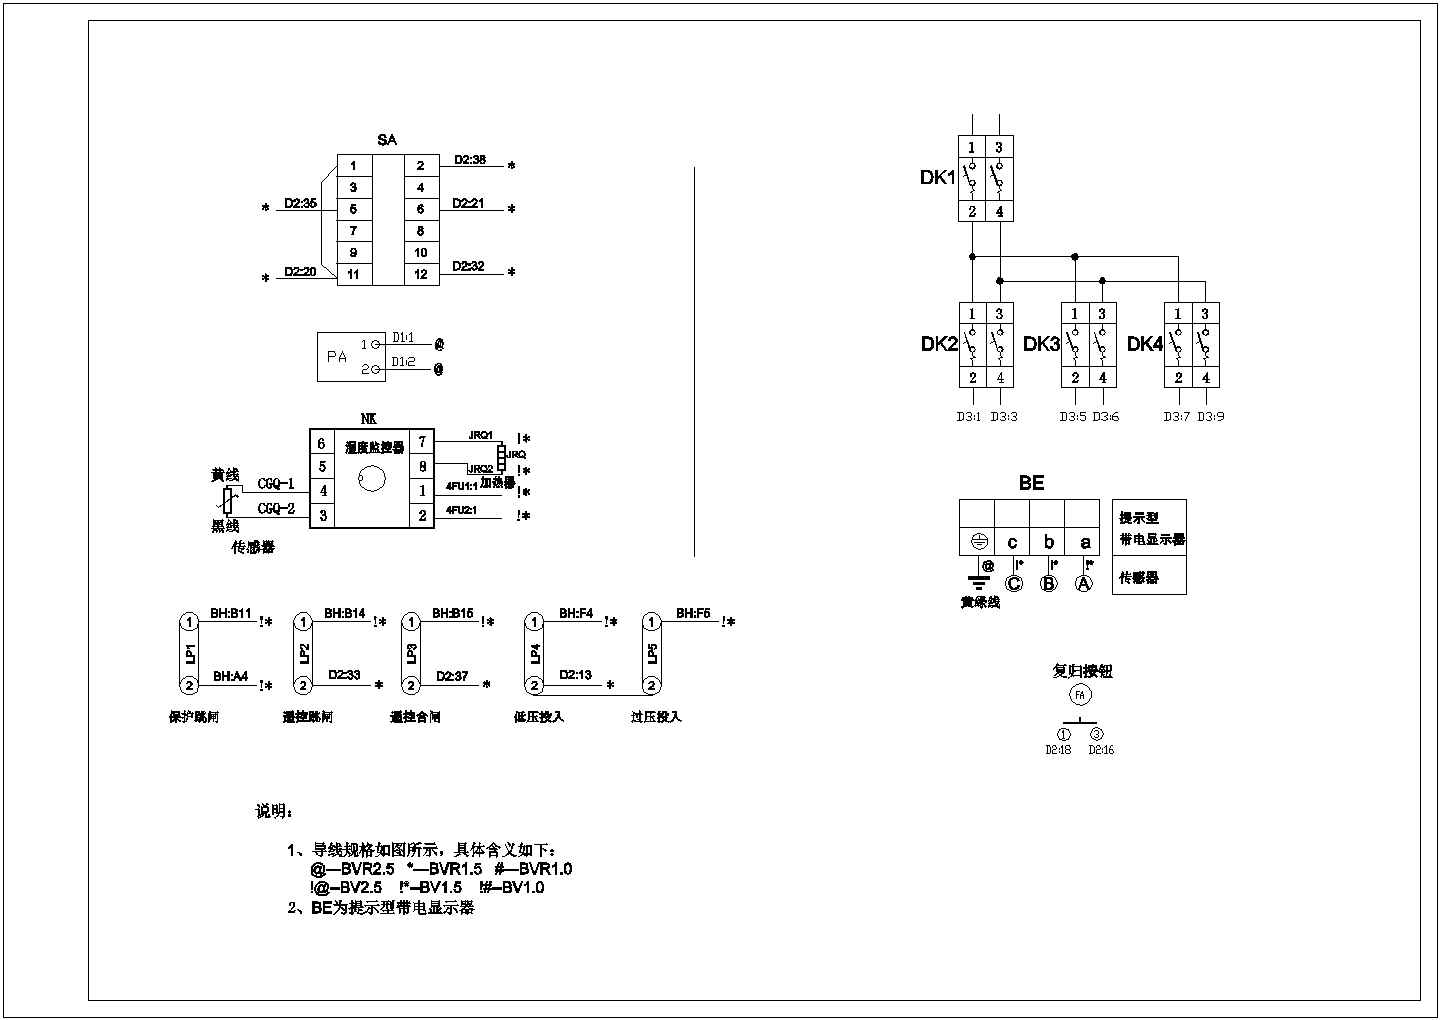 【江苏省】常州市开关柜系统设计图